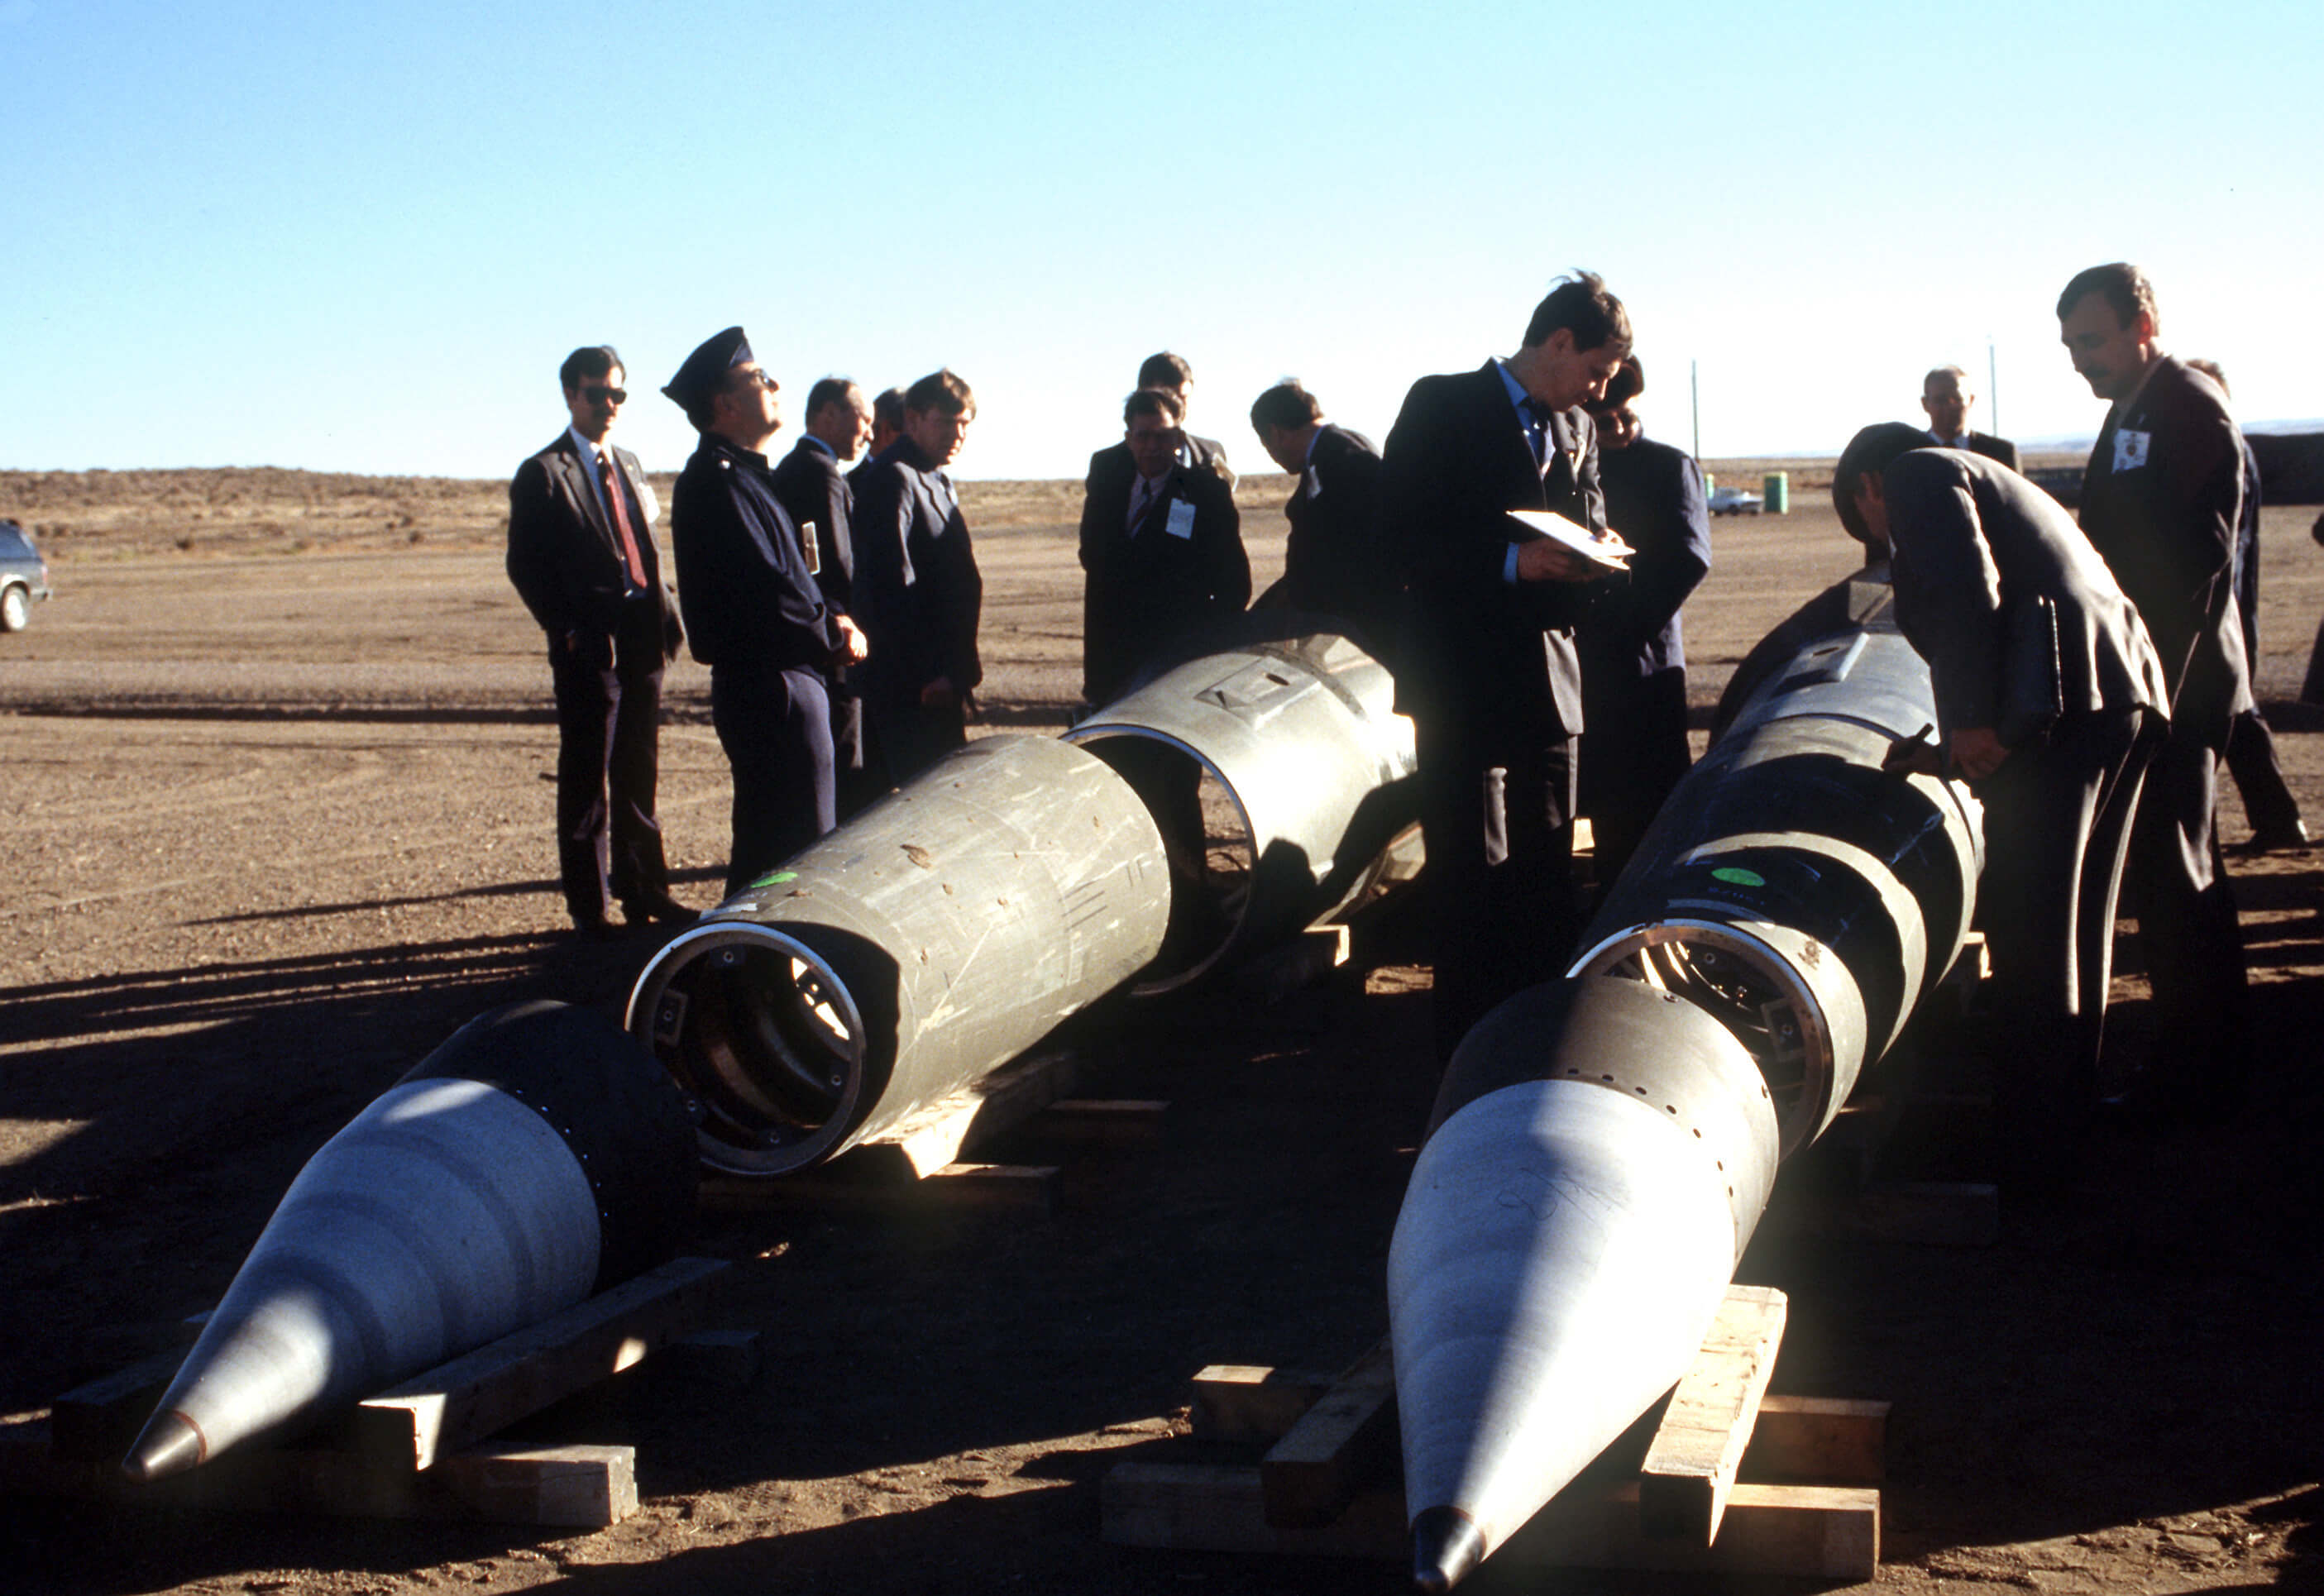 Sovjet-inspecteurs controleren in 1989 onder Amerikaanse begeleiding de ontmanteling van Pershing II-raketten in het kader van het INF-verdrag - Wikimedia